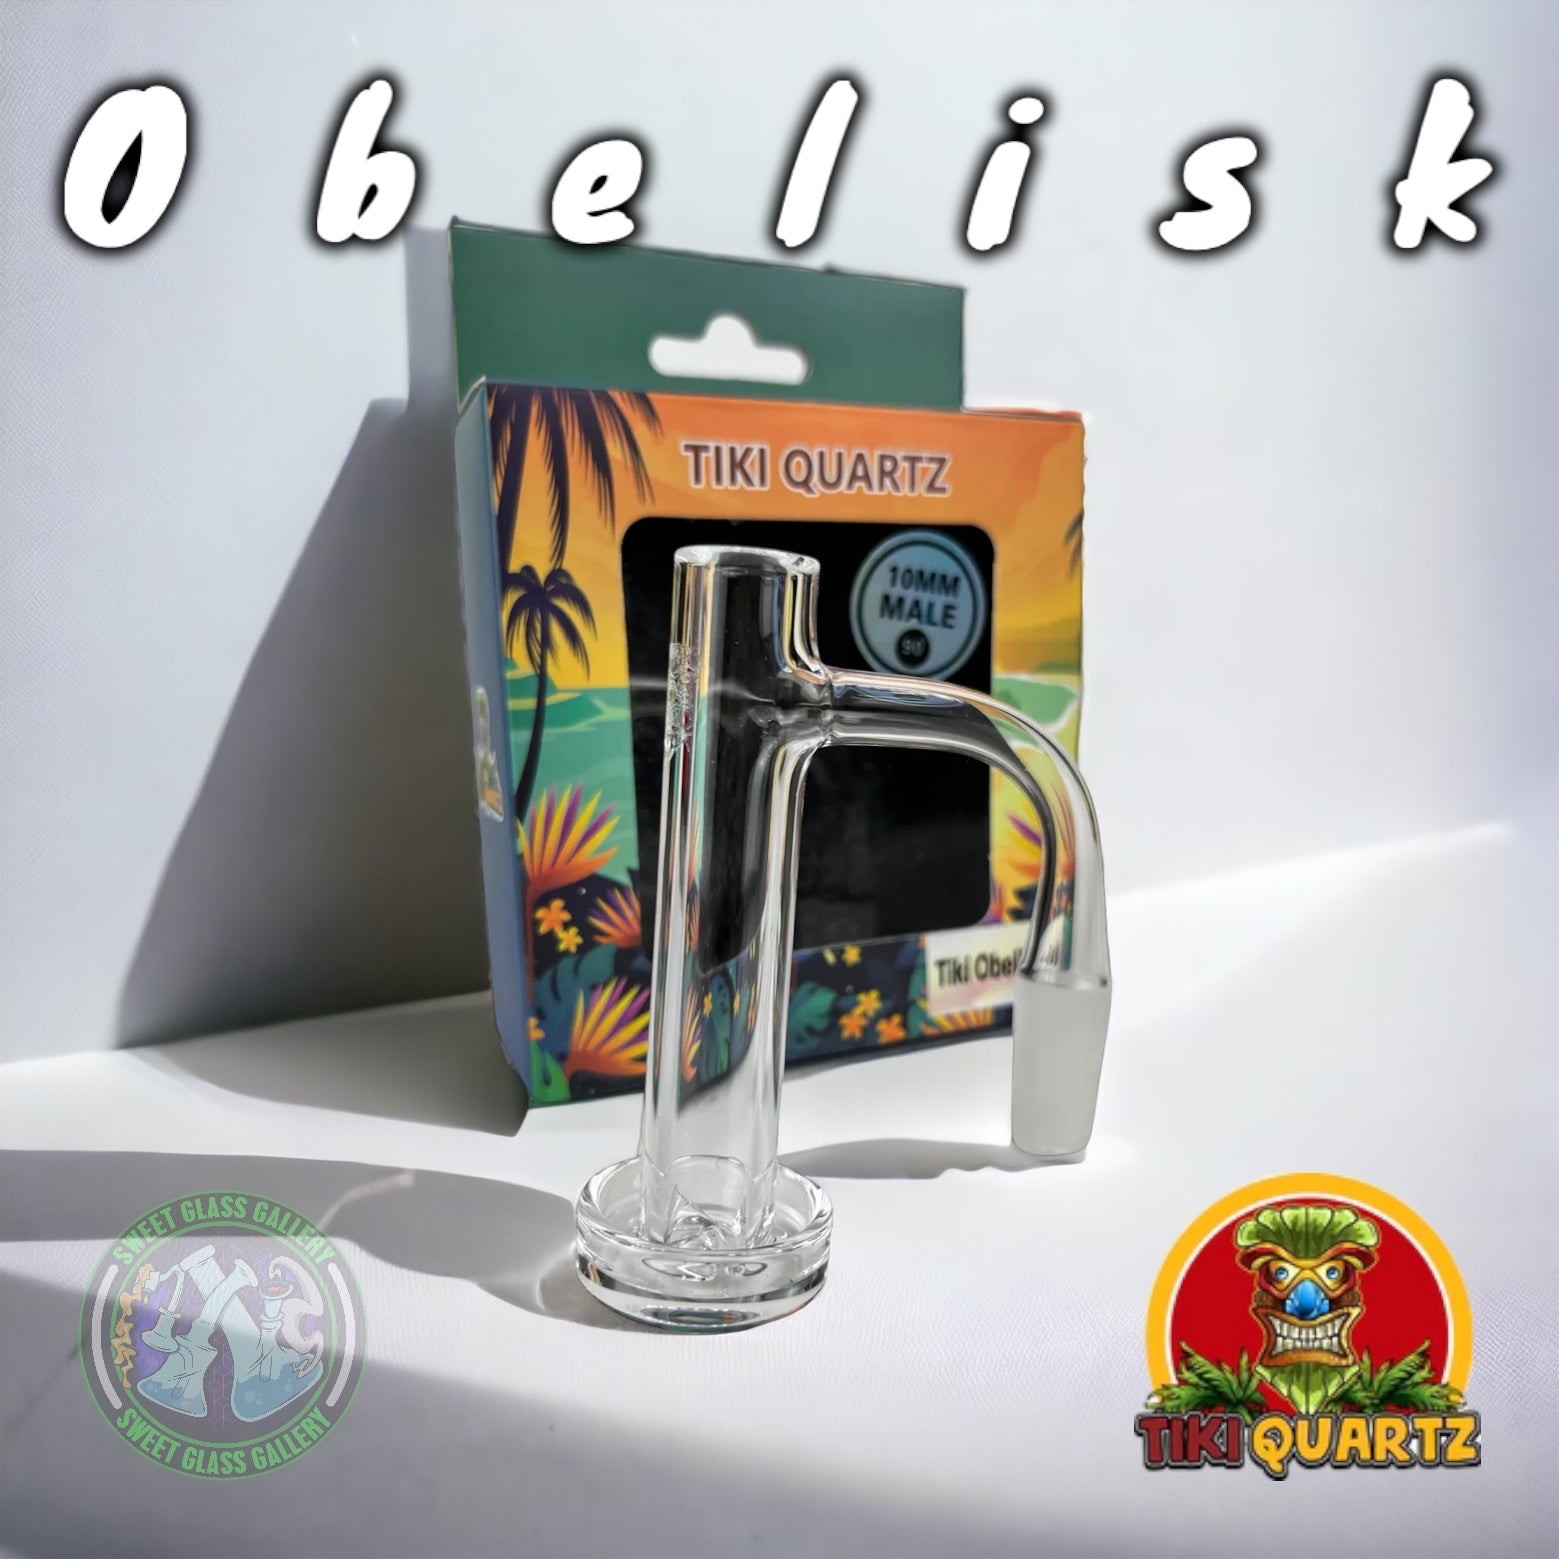 Tiki Quartz - Obelisk - “Control Tower” Style